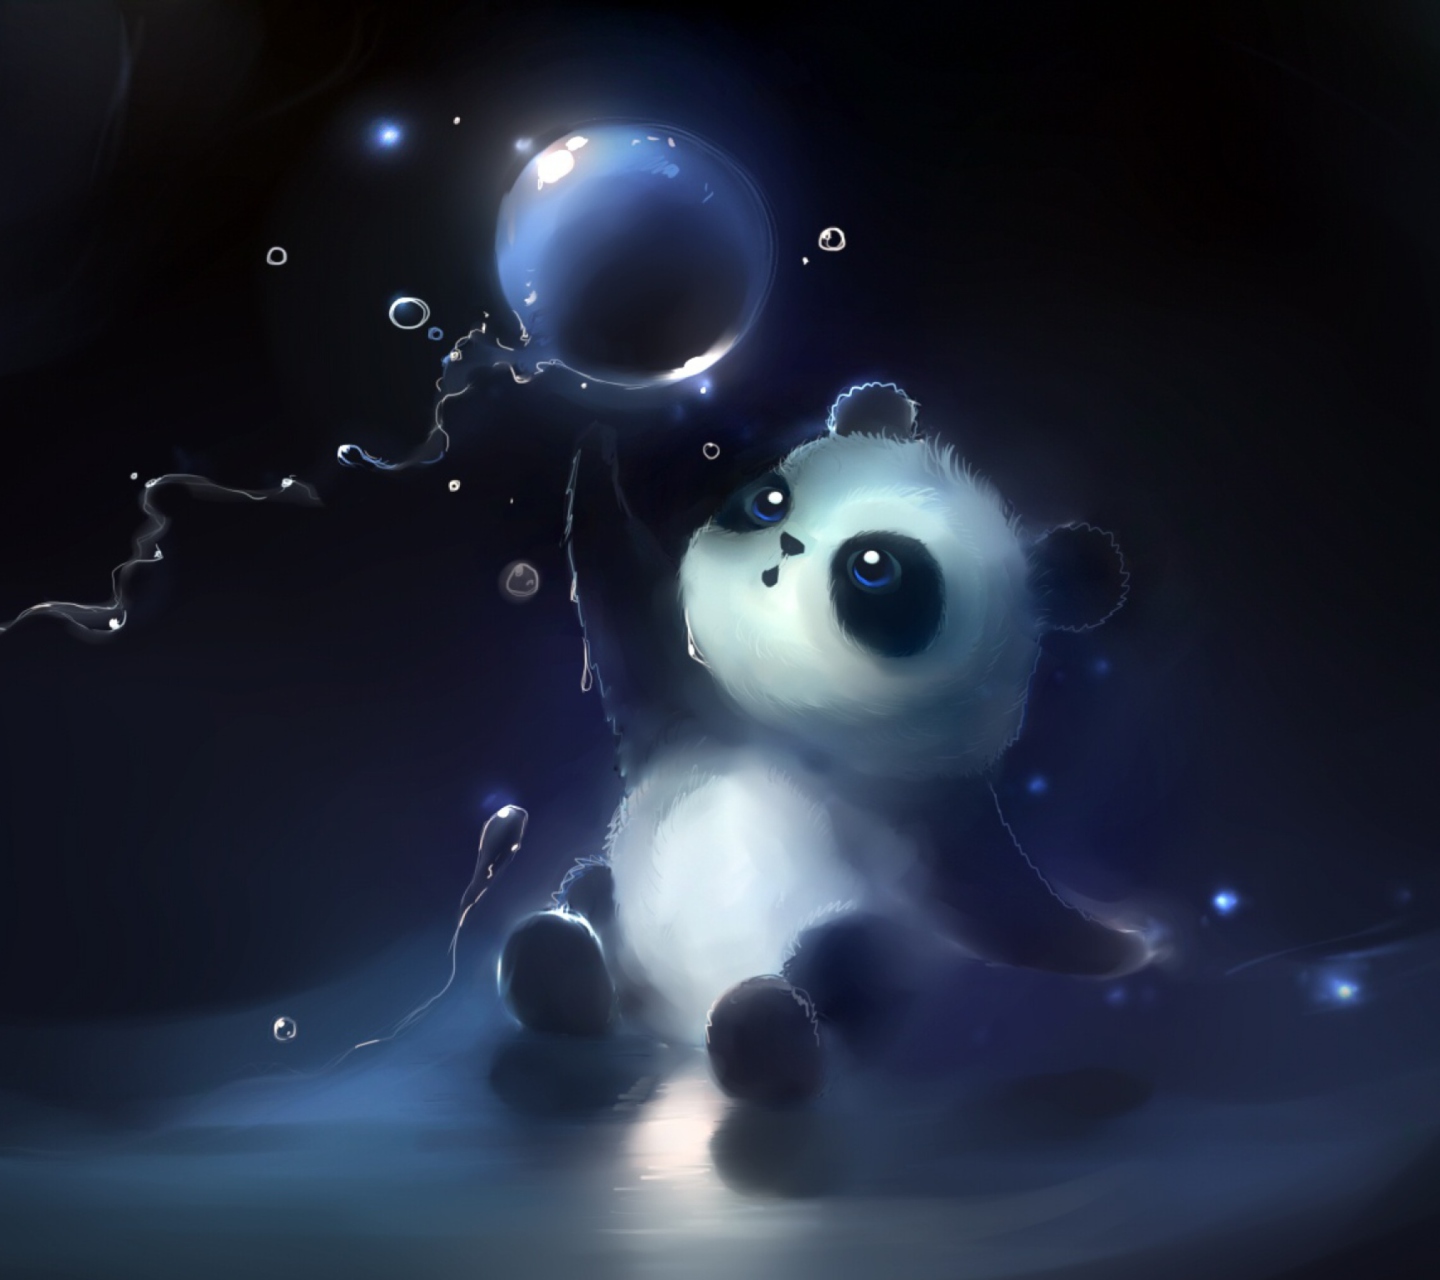 Cute Little Panda With Balloon wallpaper 1440x1280